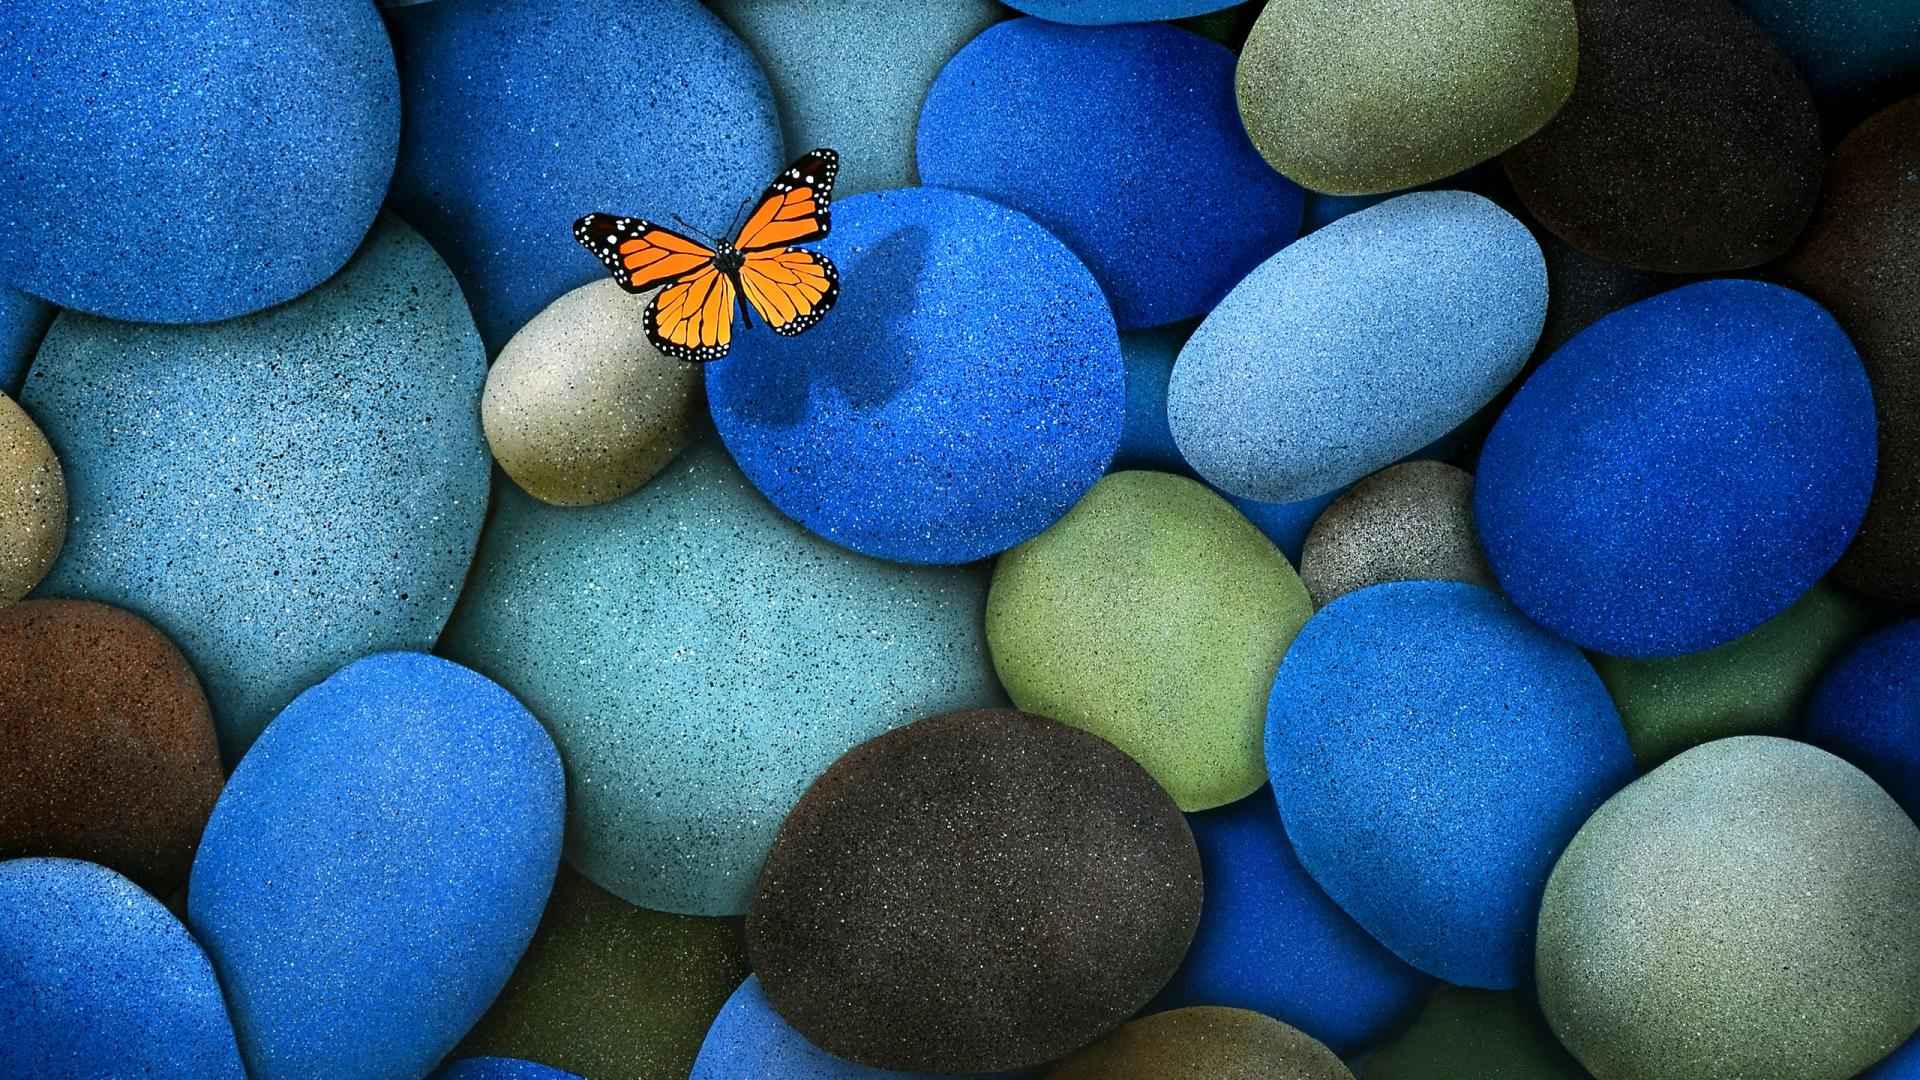 سنگ های آبی و پروانه